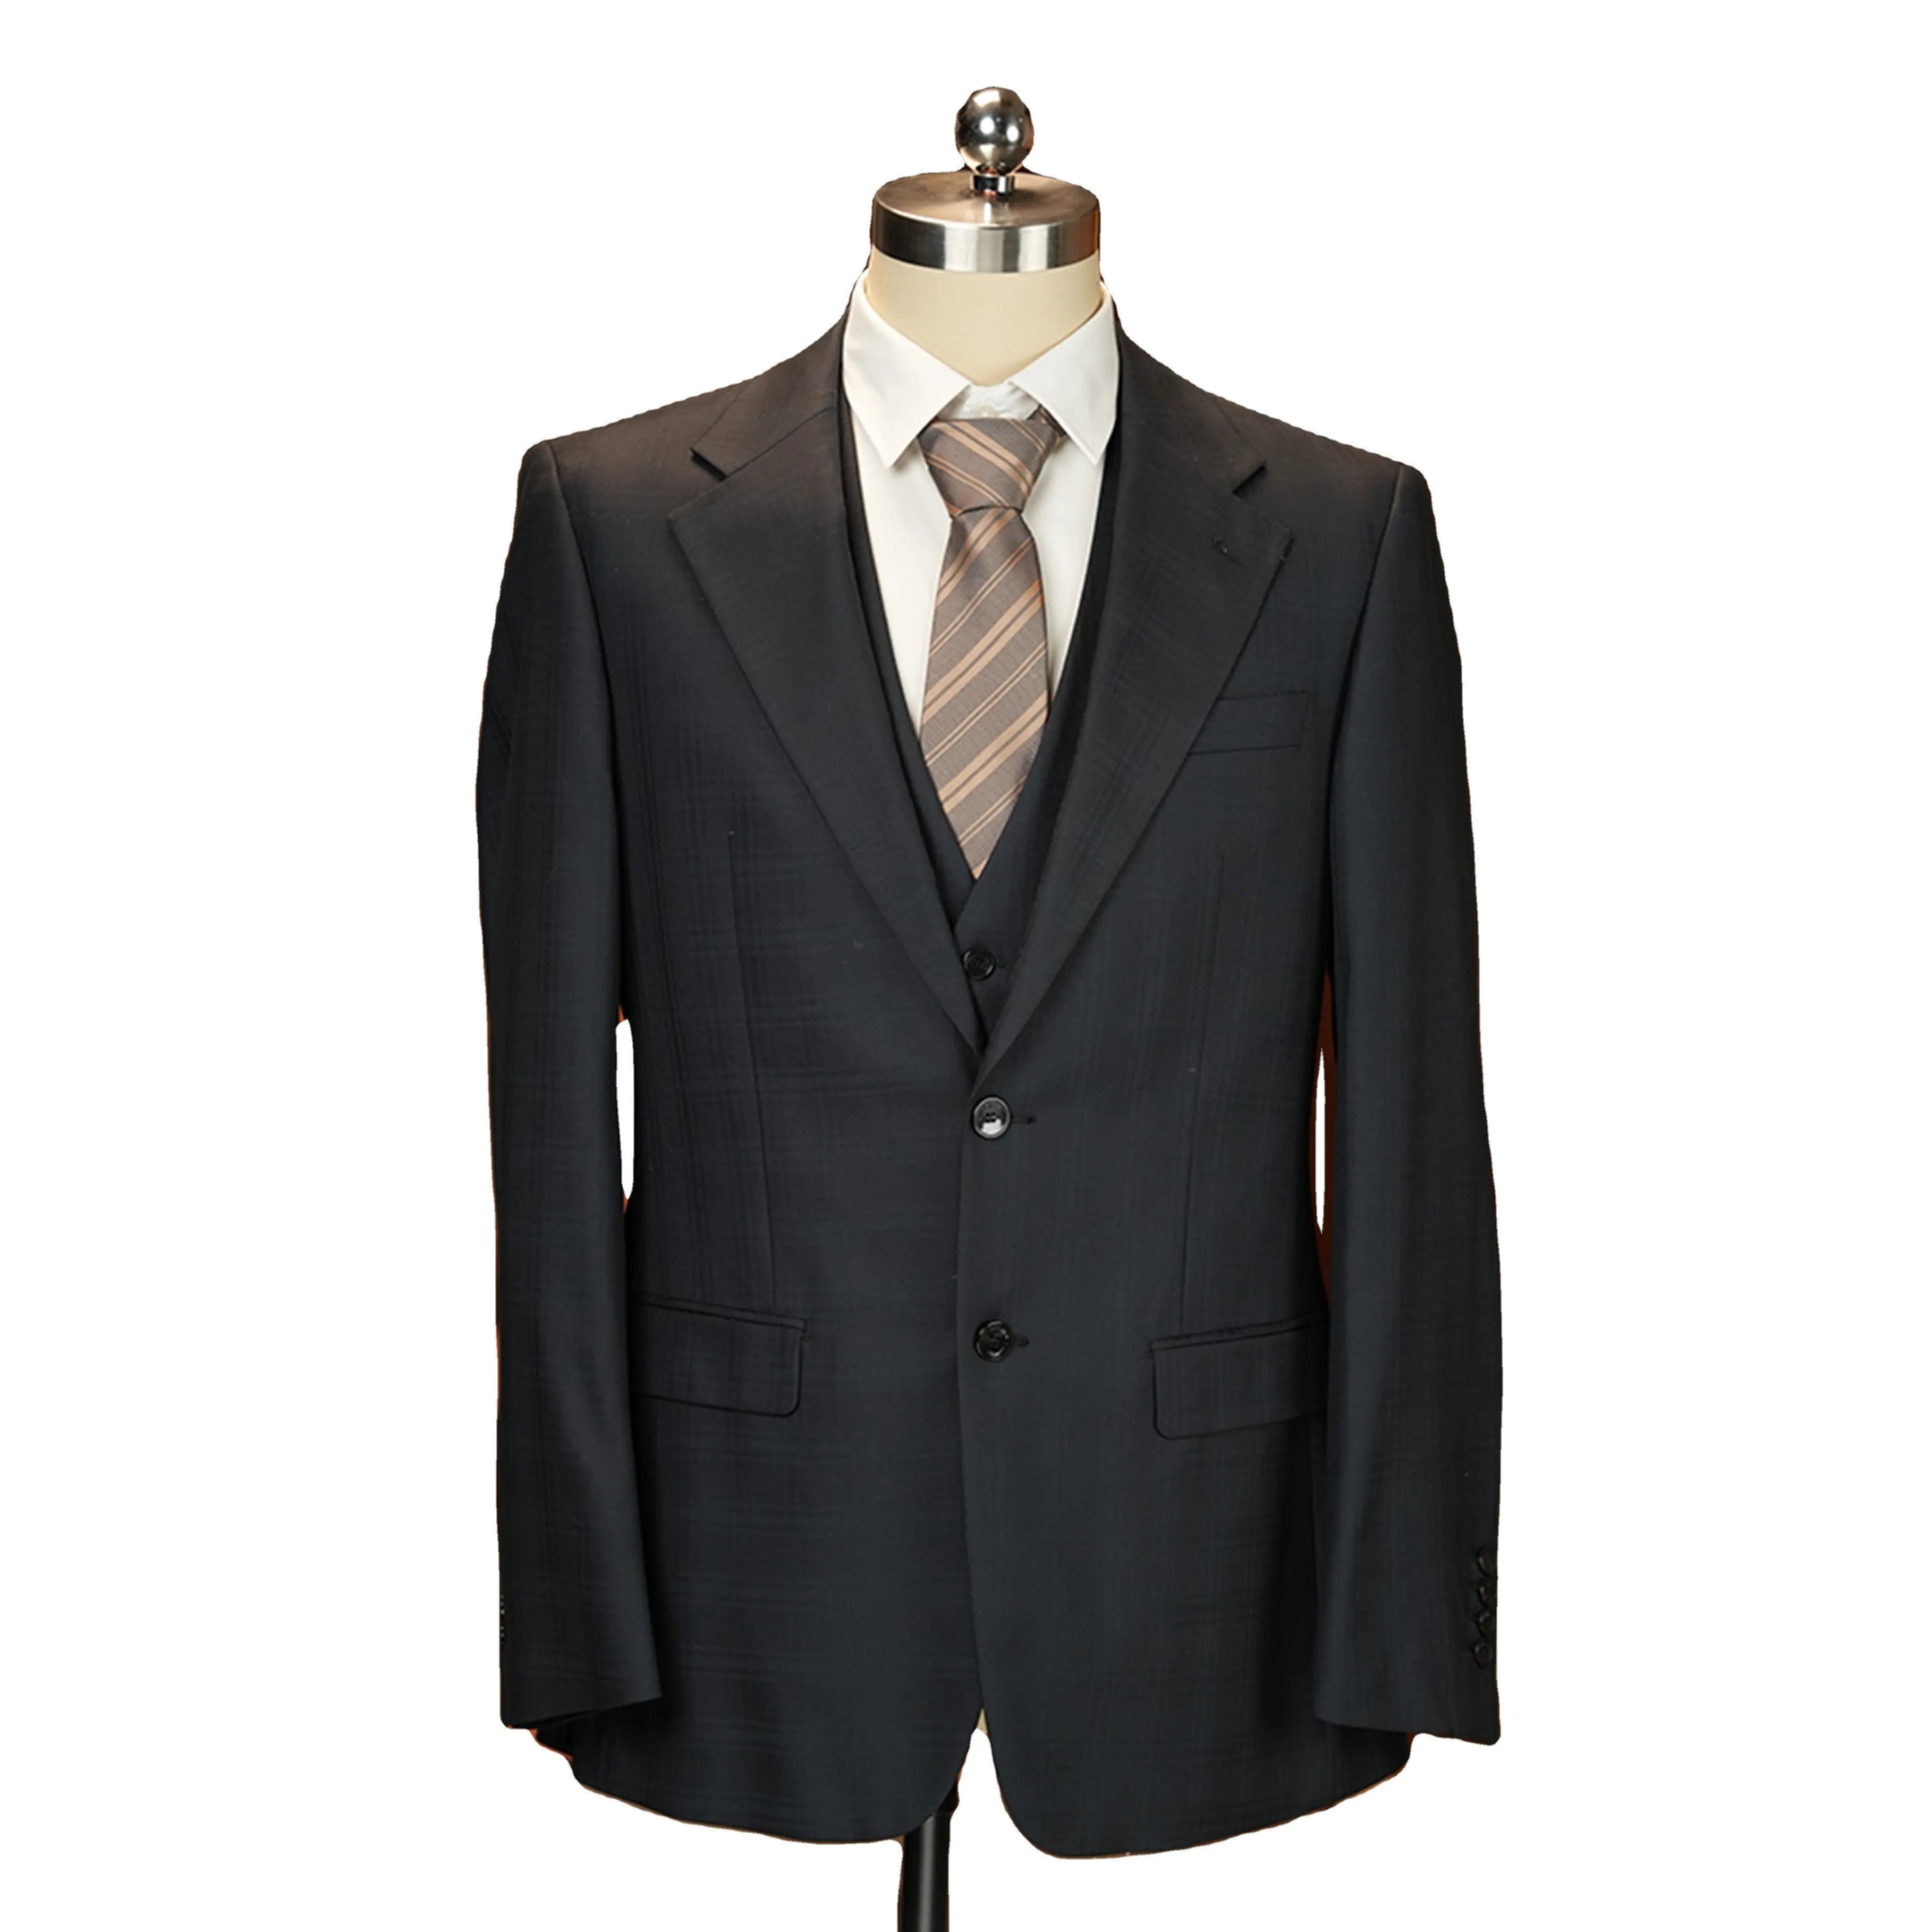 Men Suit Hot Sale One Button Wedding Party Slim Fit Business 2 3 Pieces Men'S Jacket Strack Suits